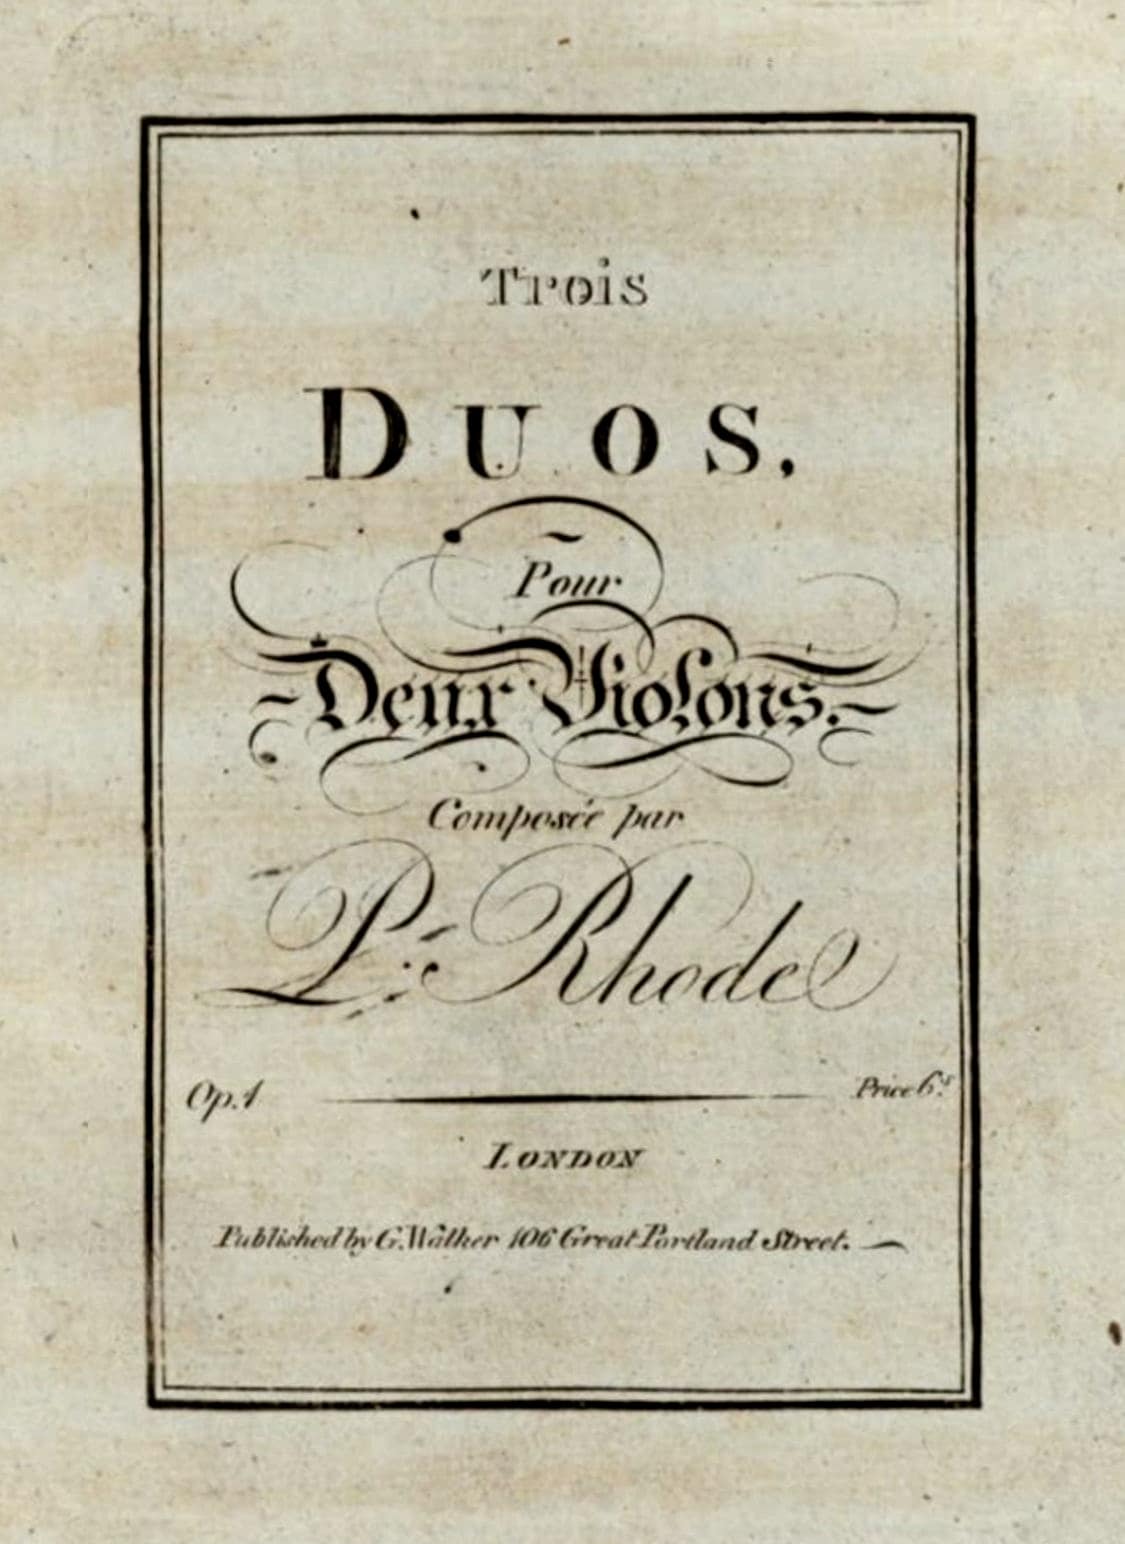 Pierre Rode, Duos, op. 1 (London: G. Walker, [1815])